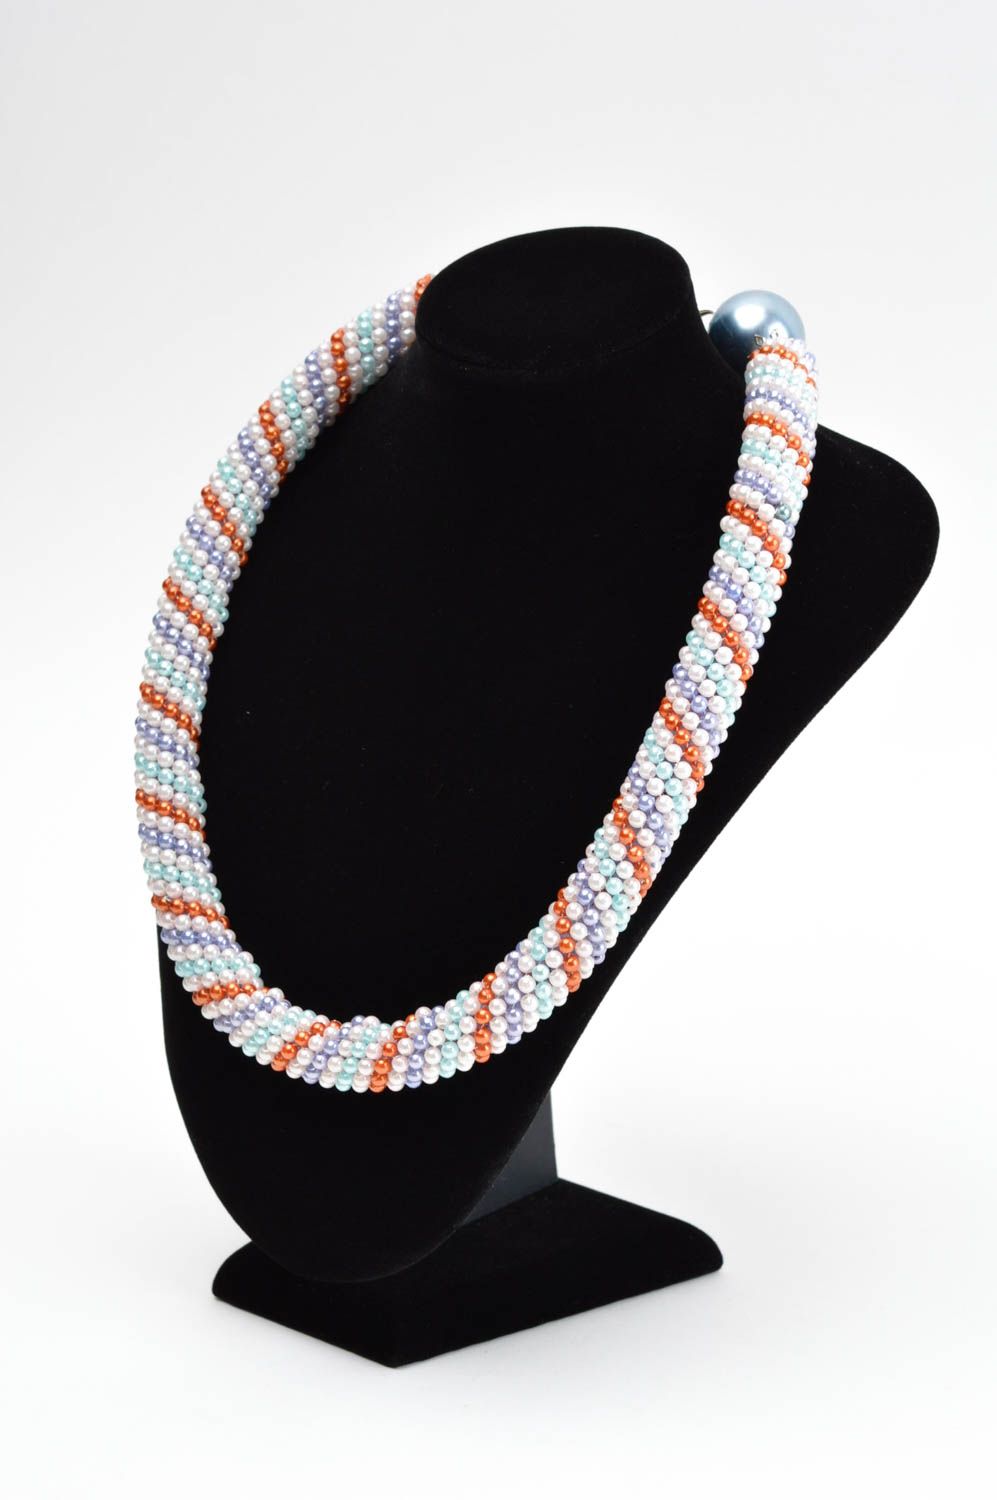 Collier en perles fantaisie Bijou fait main couleurs pastel Cadeau femme photo 1